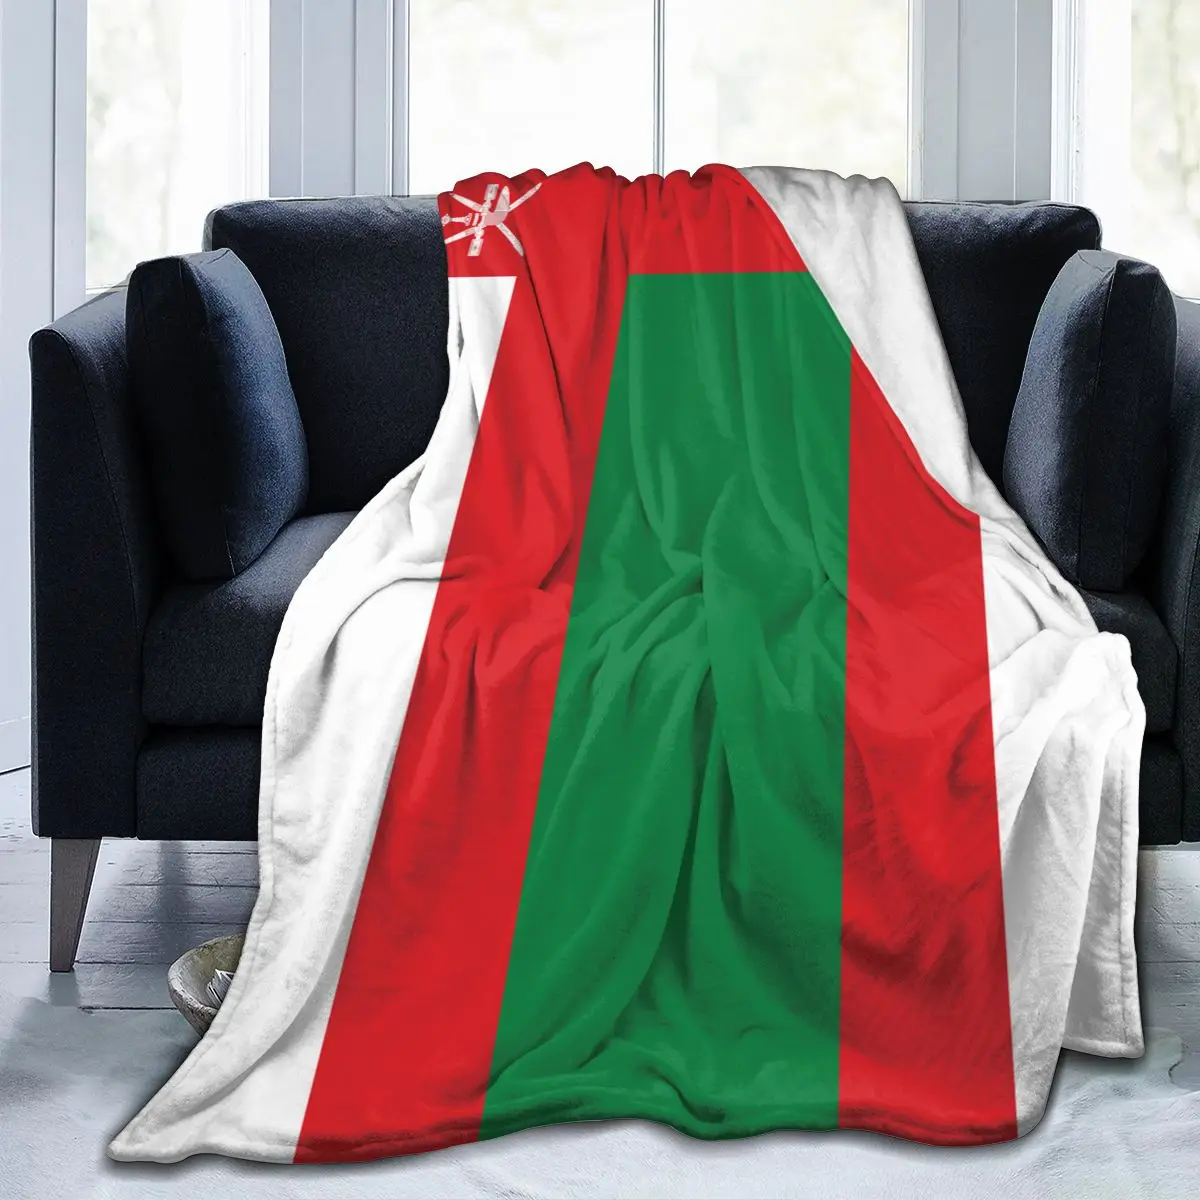 

Уникальное одеяло для семьи, друзей, флаг Омана, прочное супермягкое удобное домашнее Подарочное одеяло